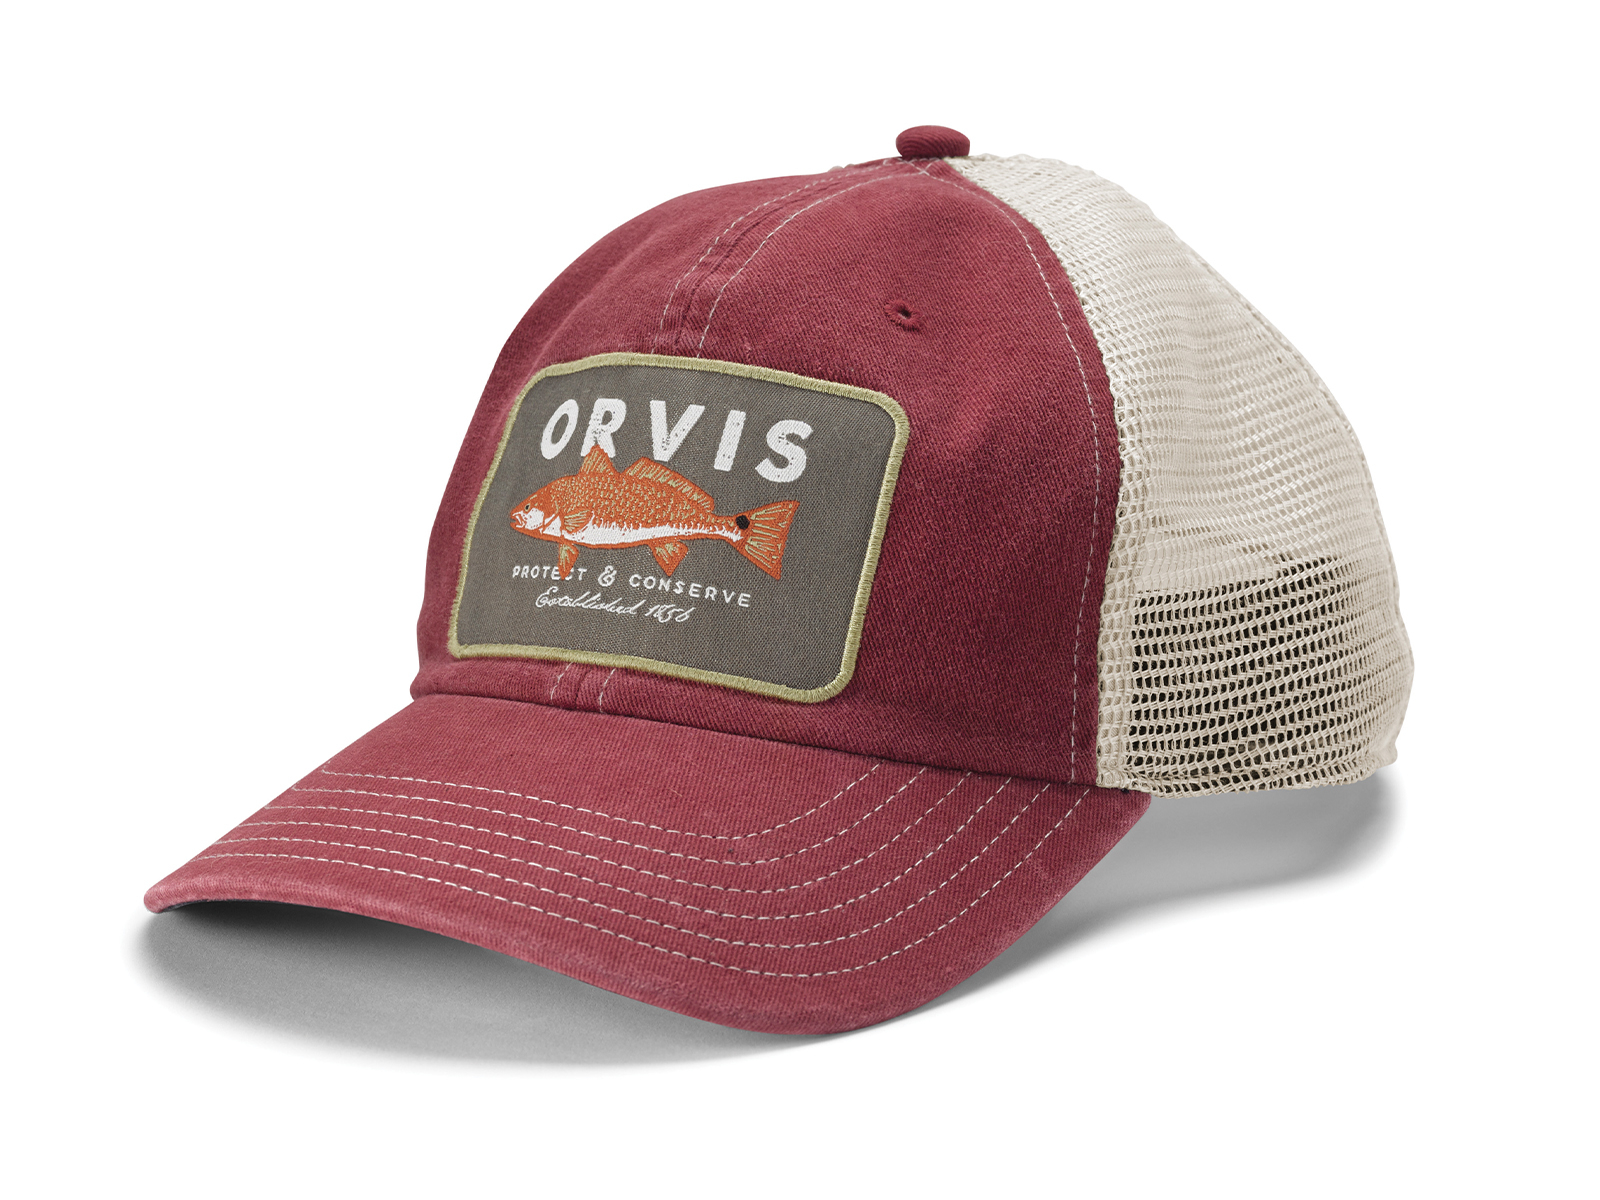 Orvis Hats by Gregory Allen on Dribbble